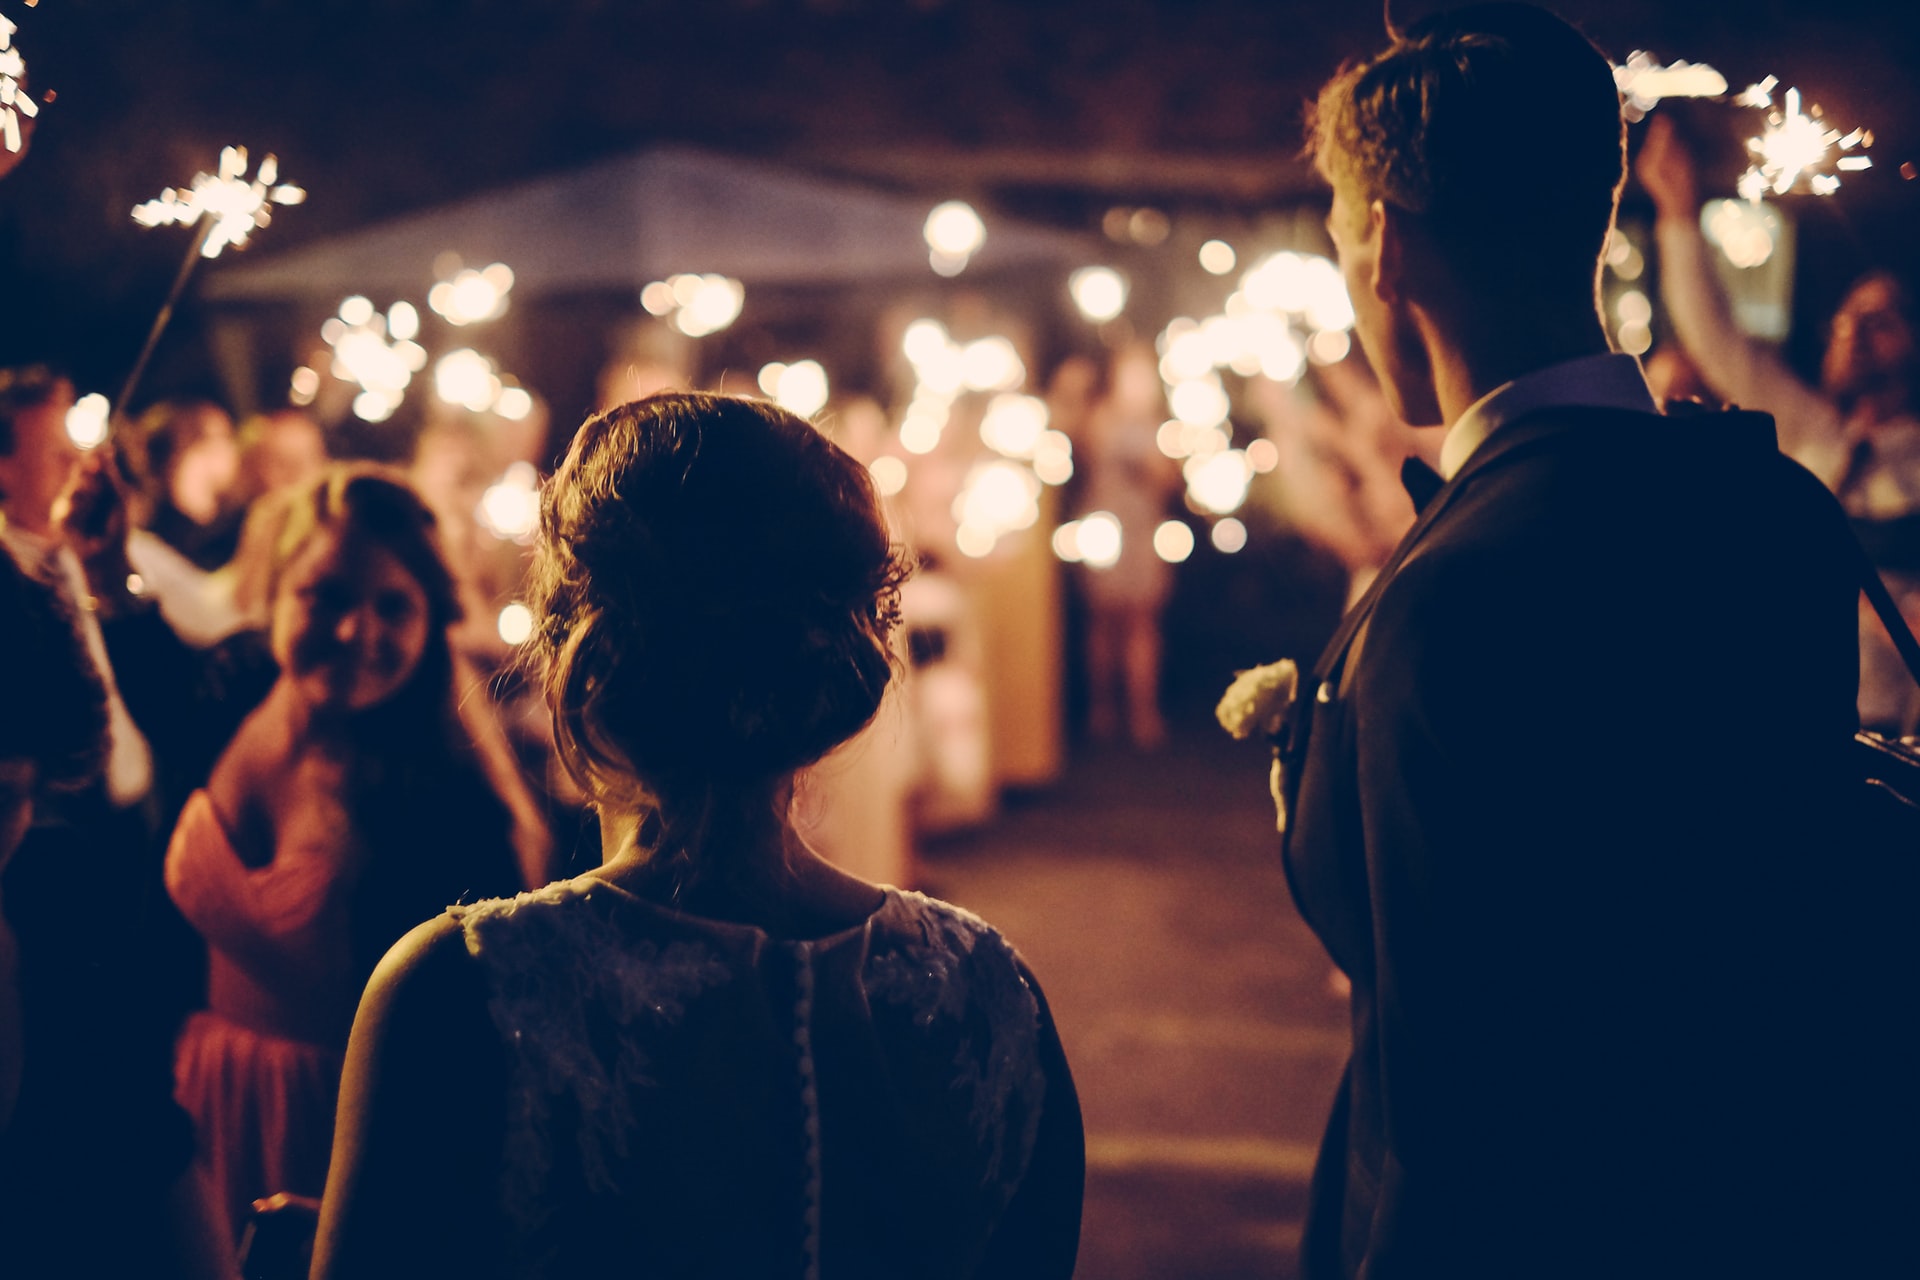 marketing tips for wedding photographers 6 image 